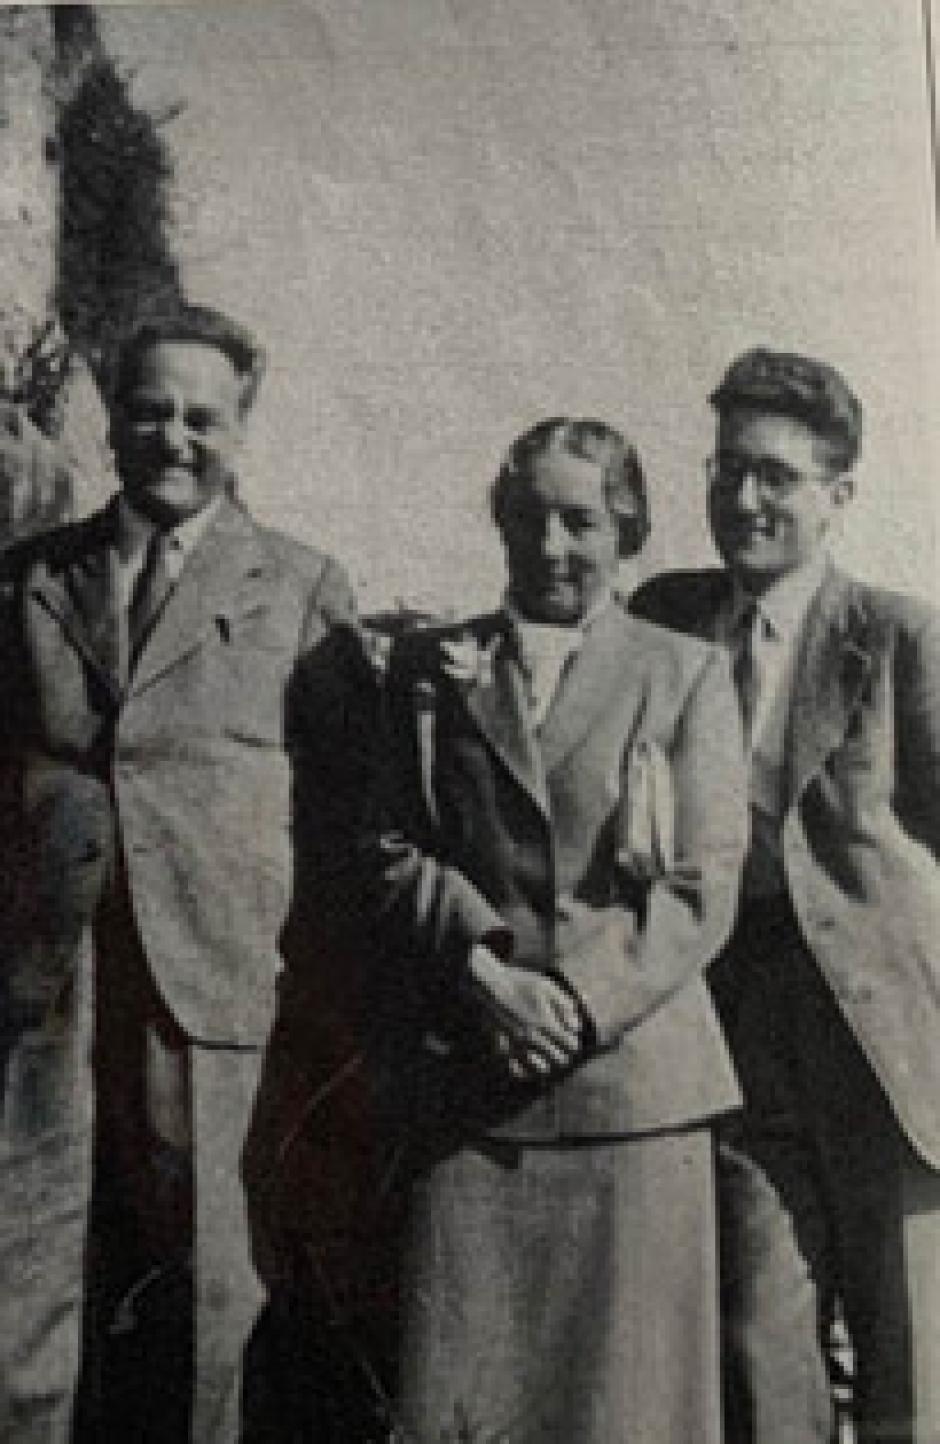 Francis con sus padres, después de reunirse tras la Segunda Guerra Mundial